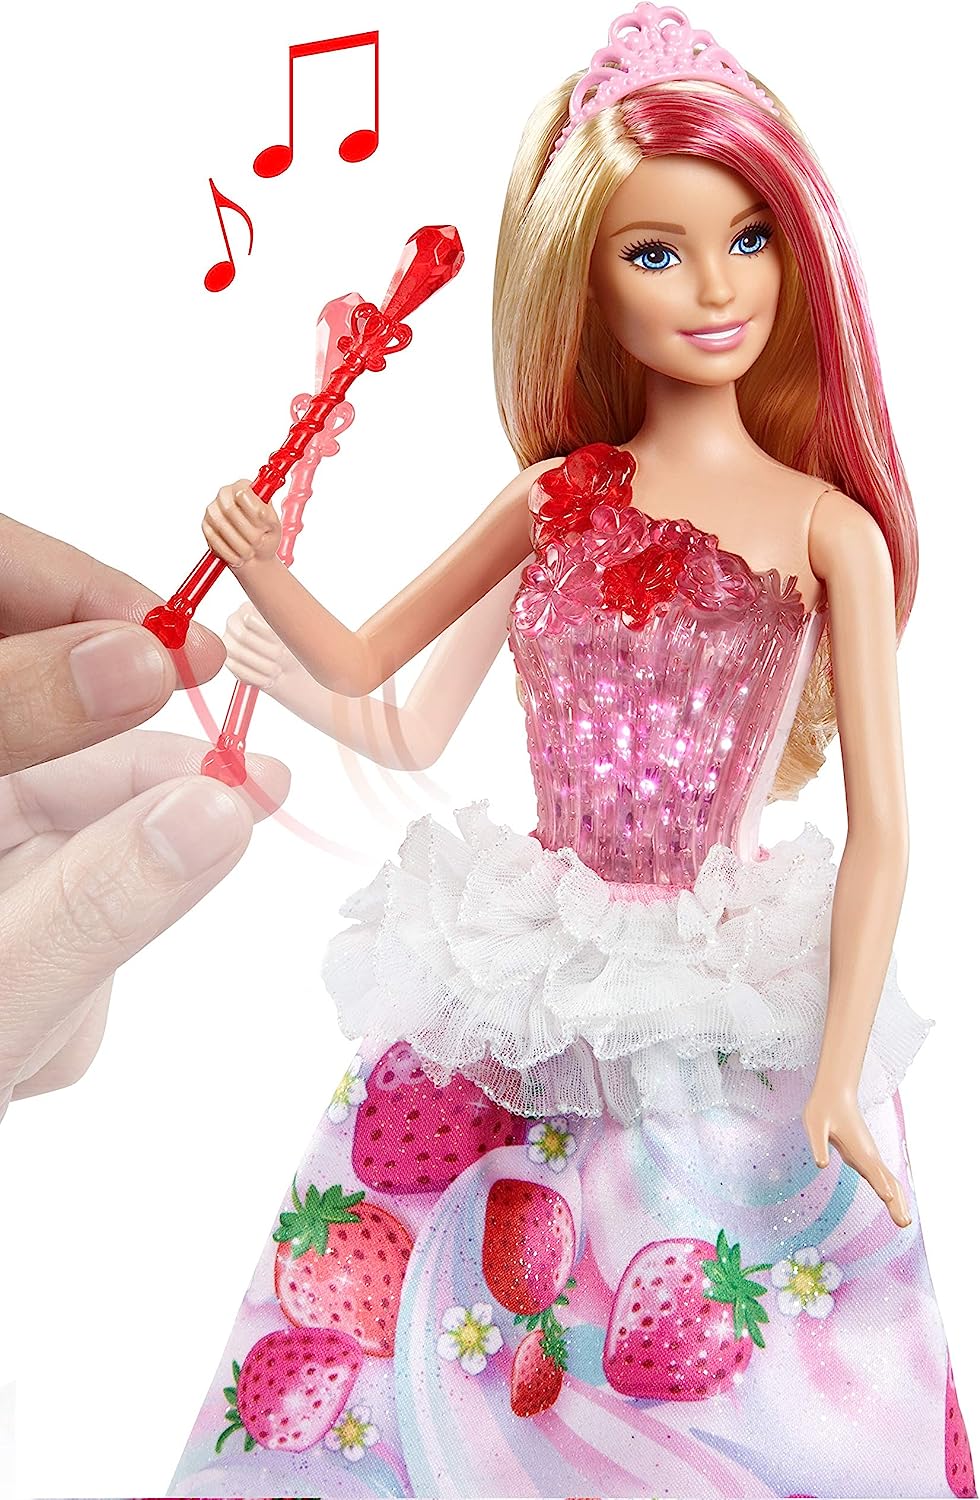 barbie dream top